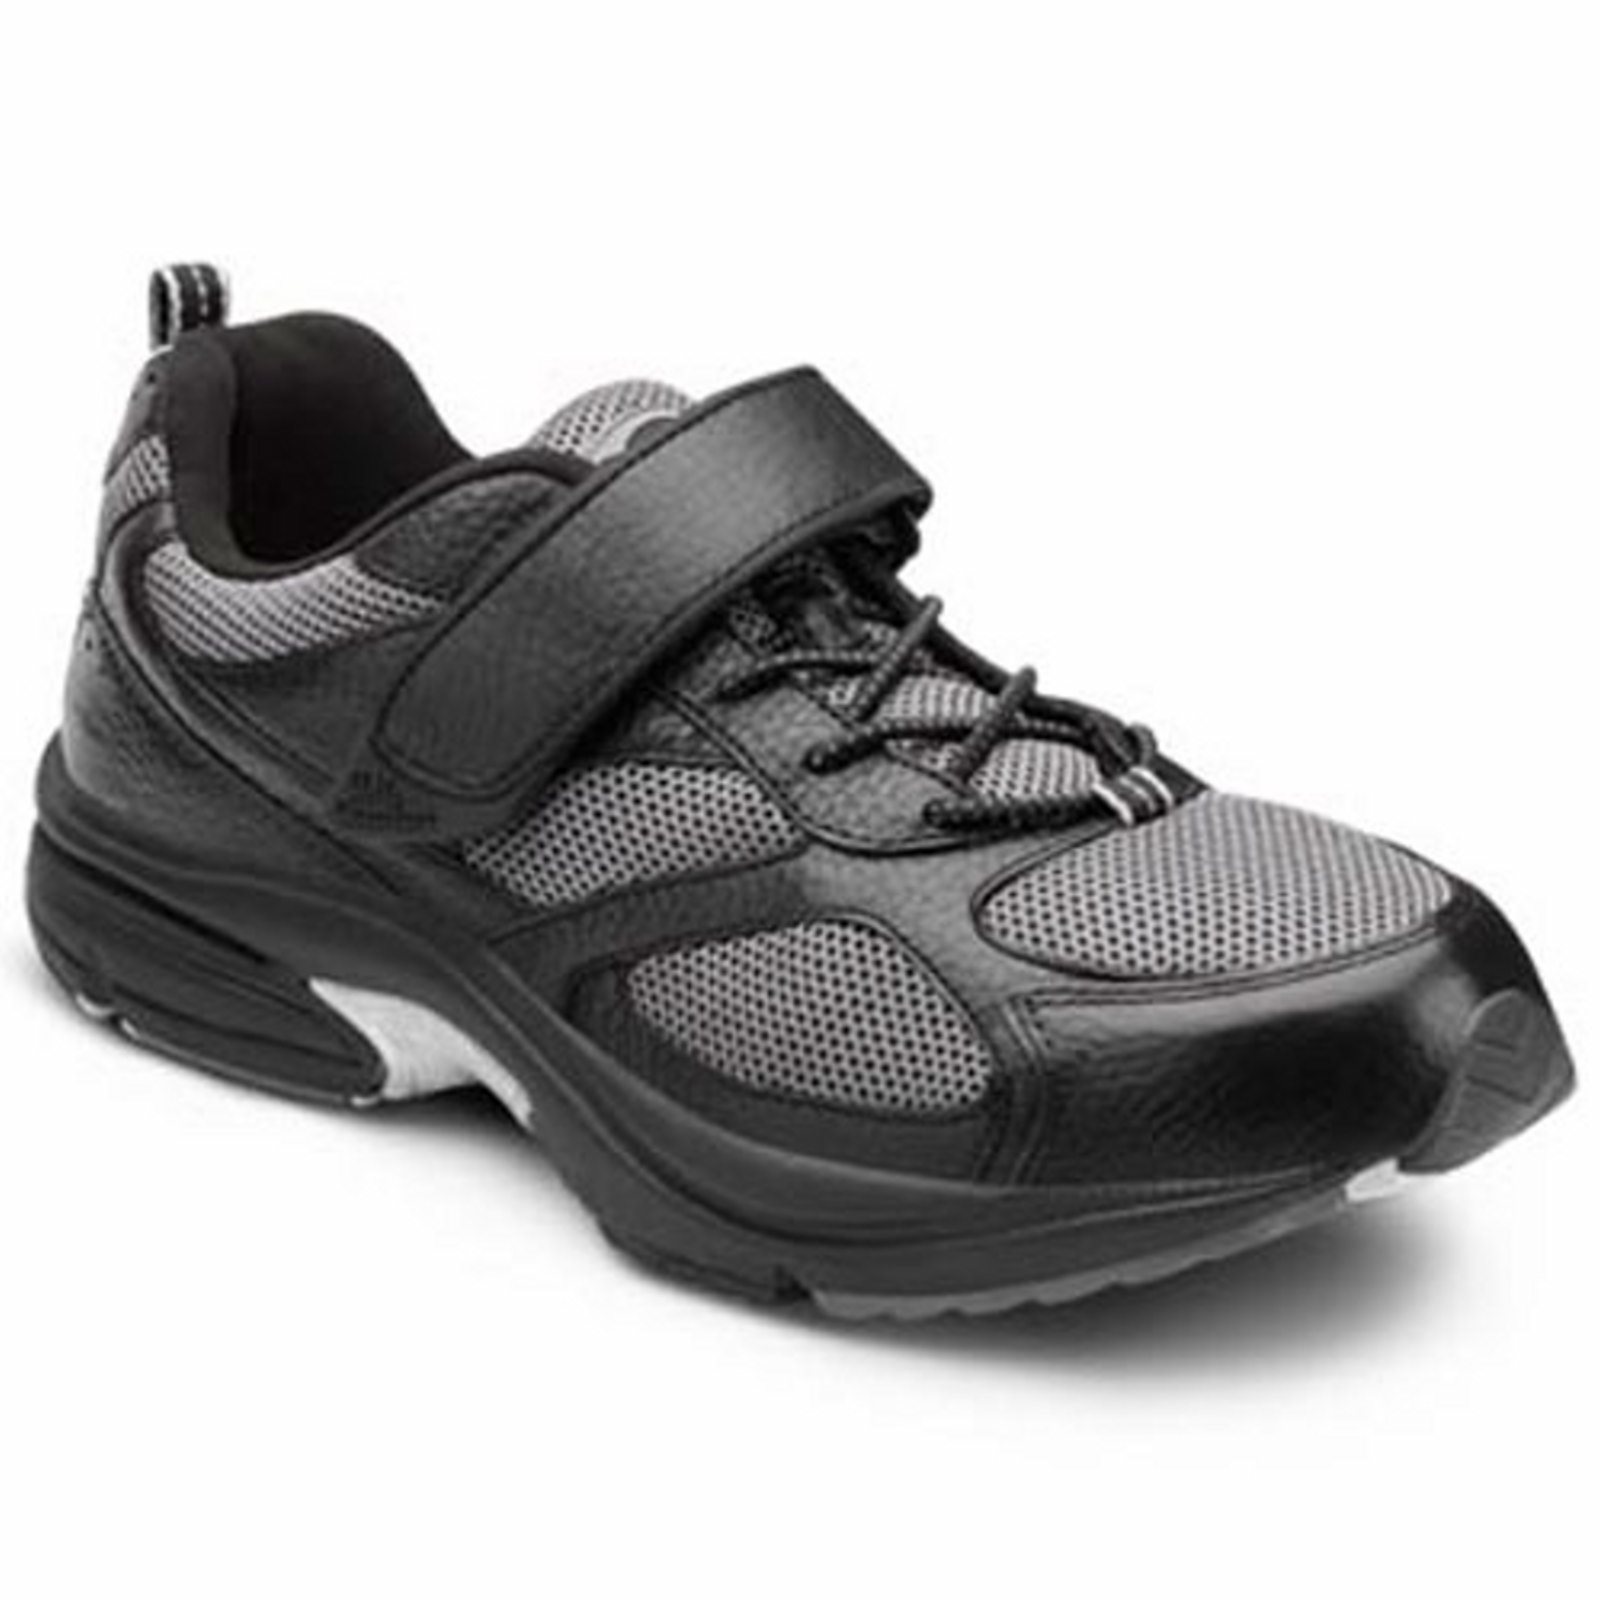 Dr. Comfort Endurance Men's Athletic Shoe: 9 Wide (E/2E) Black Elastic Lace w/Strap - image 1 of 5